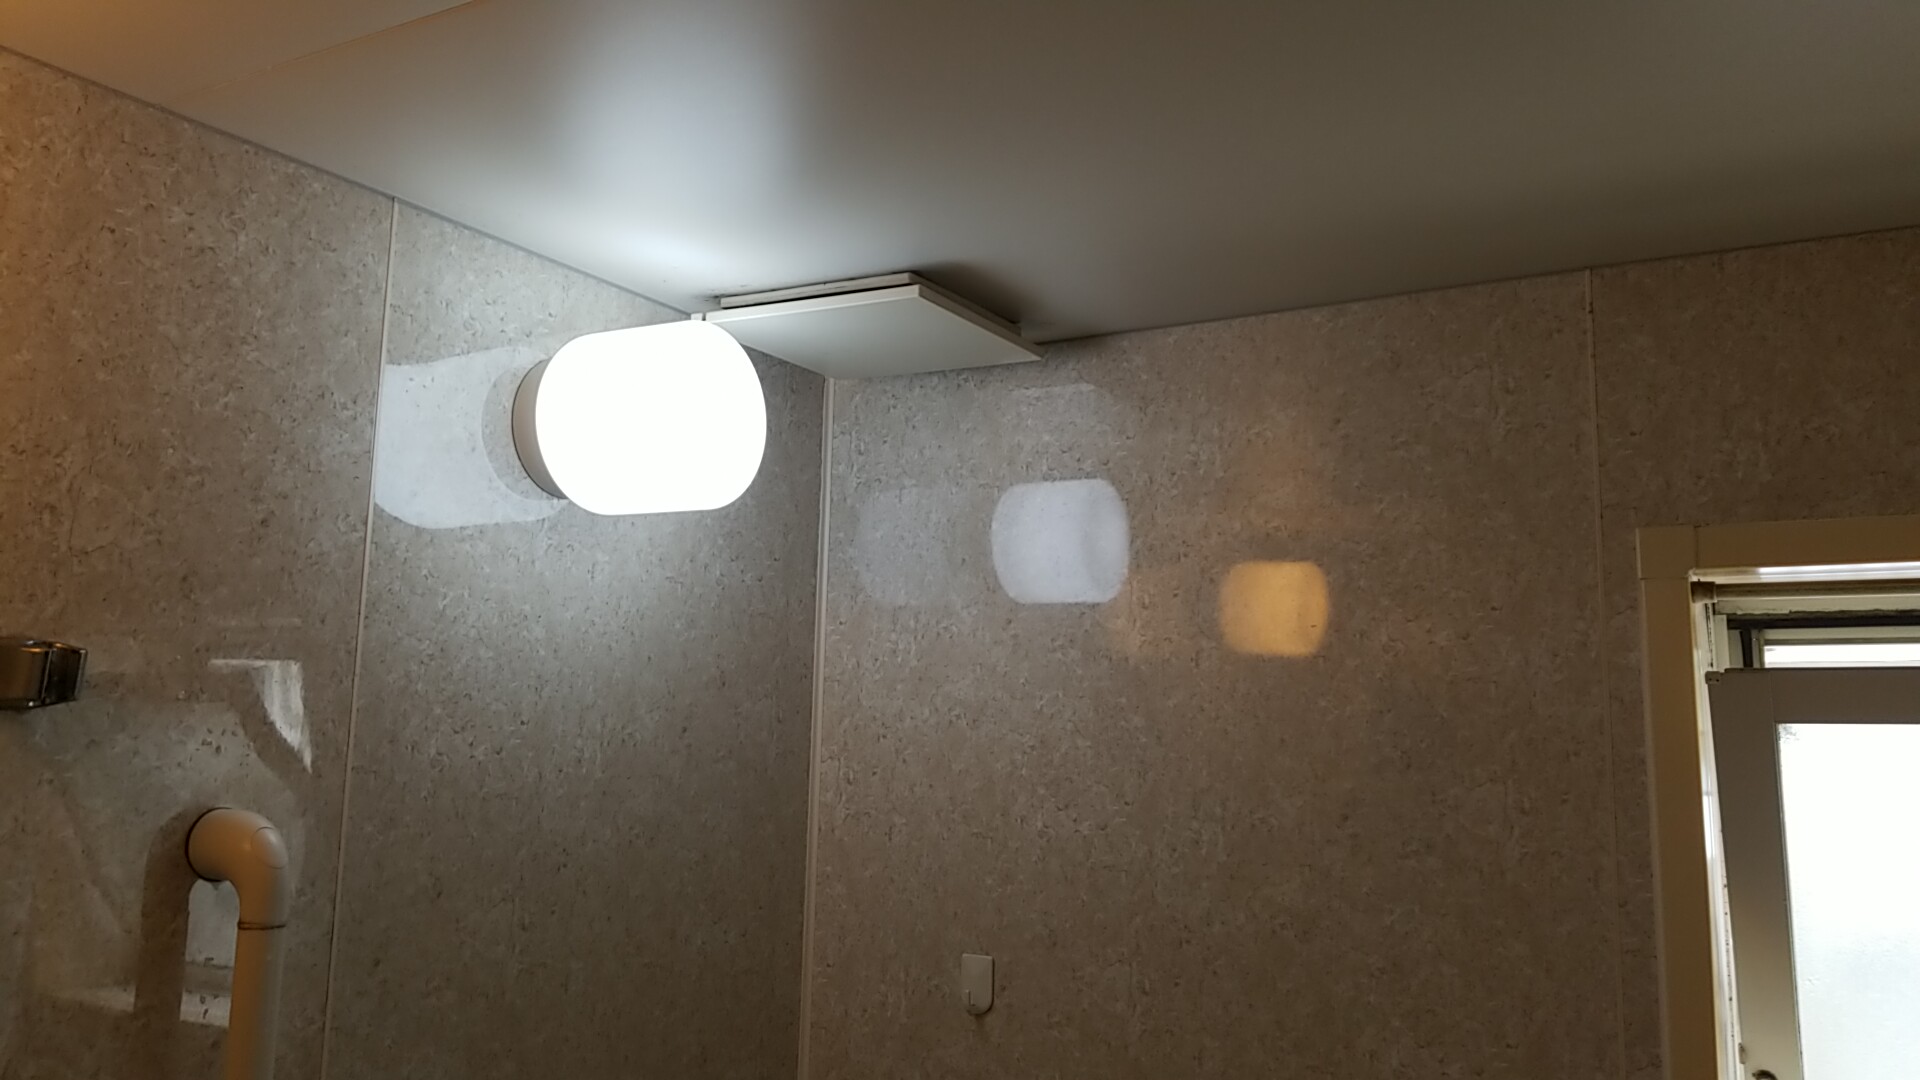 愛知県愛西市 浴室天井換気扇取替工事